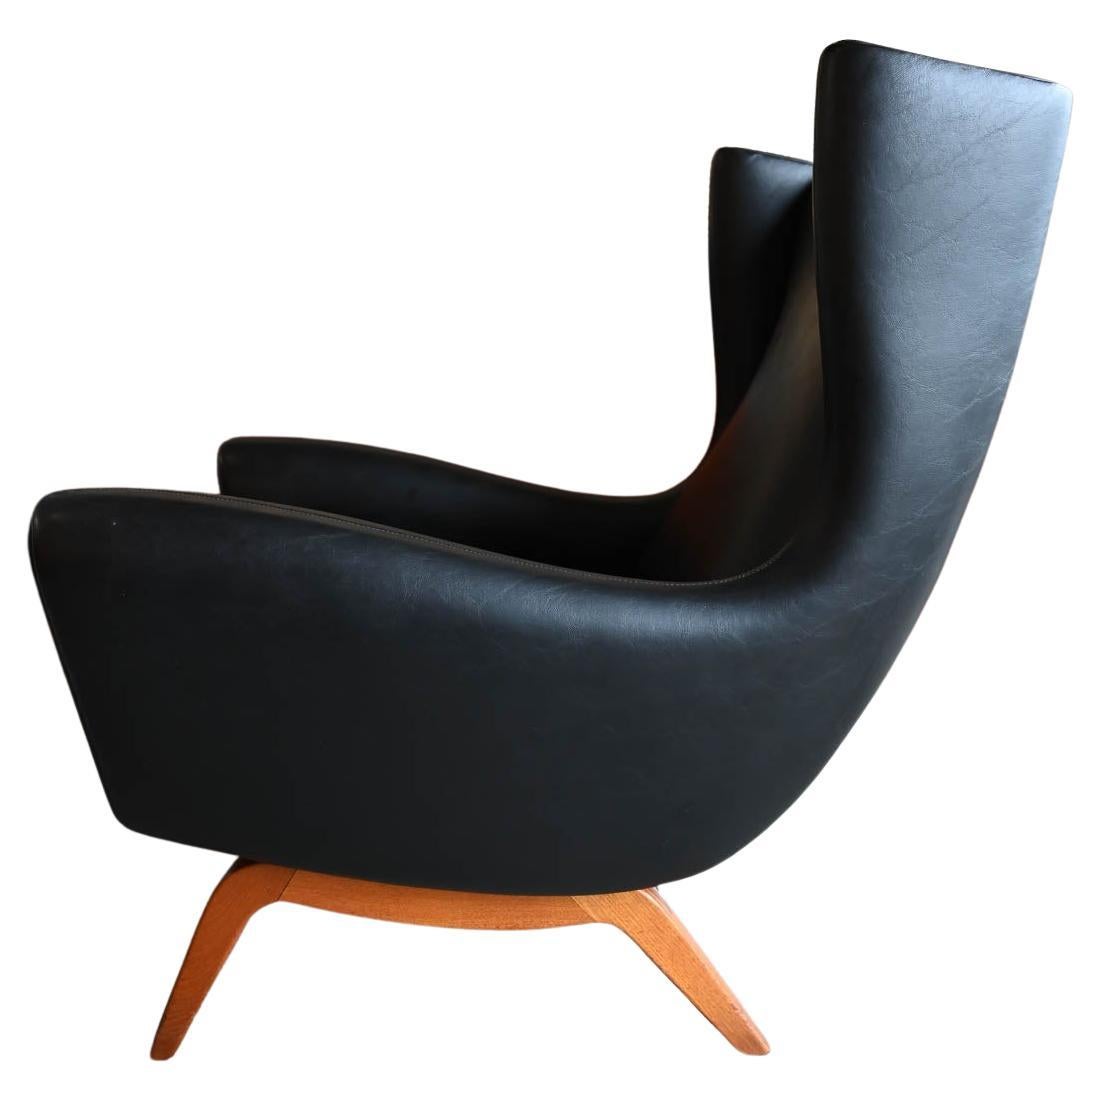 Illum Wikkelso for Soren Willadsen Model 110 Wingback Lounge Chair, ca. 1955 For Sale